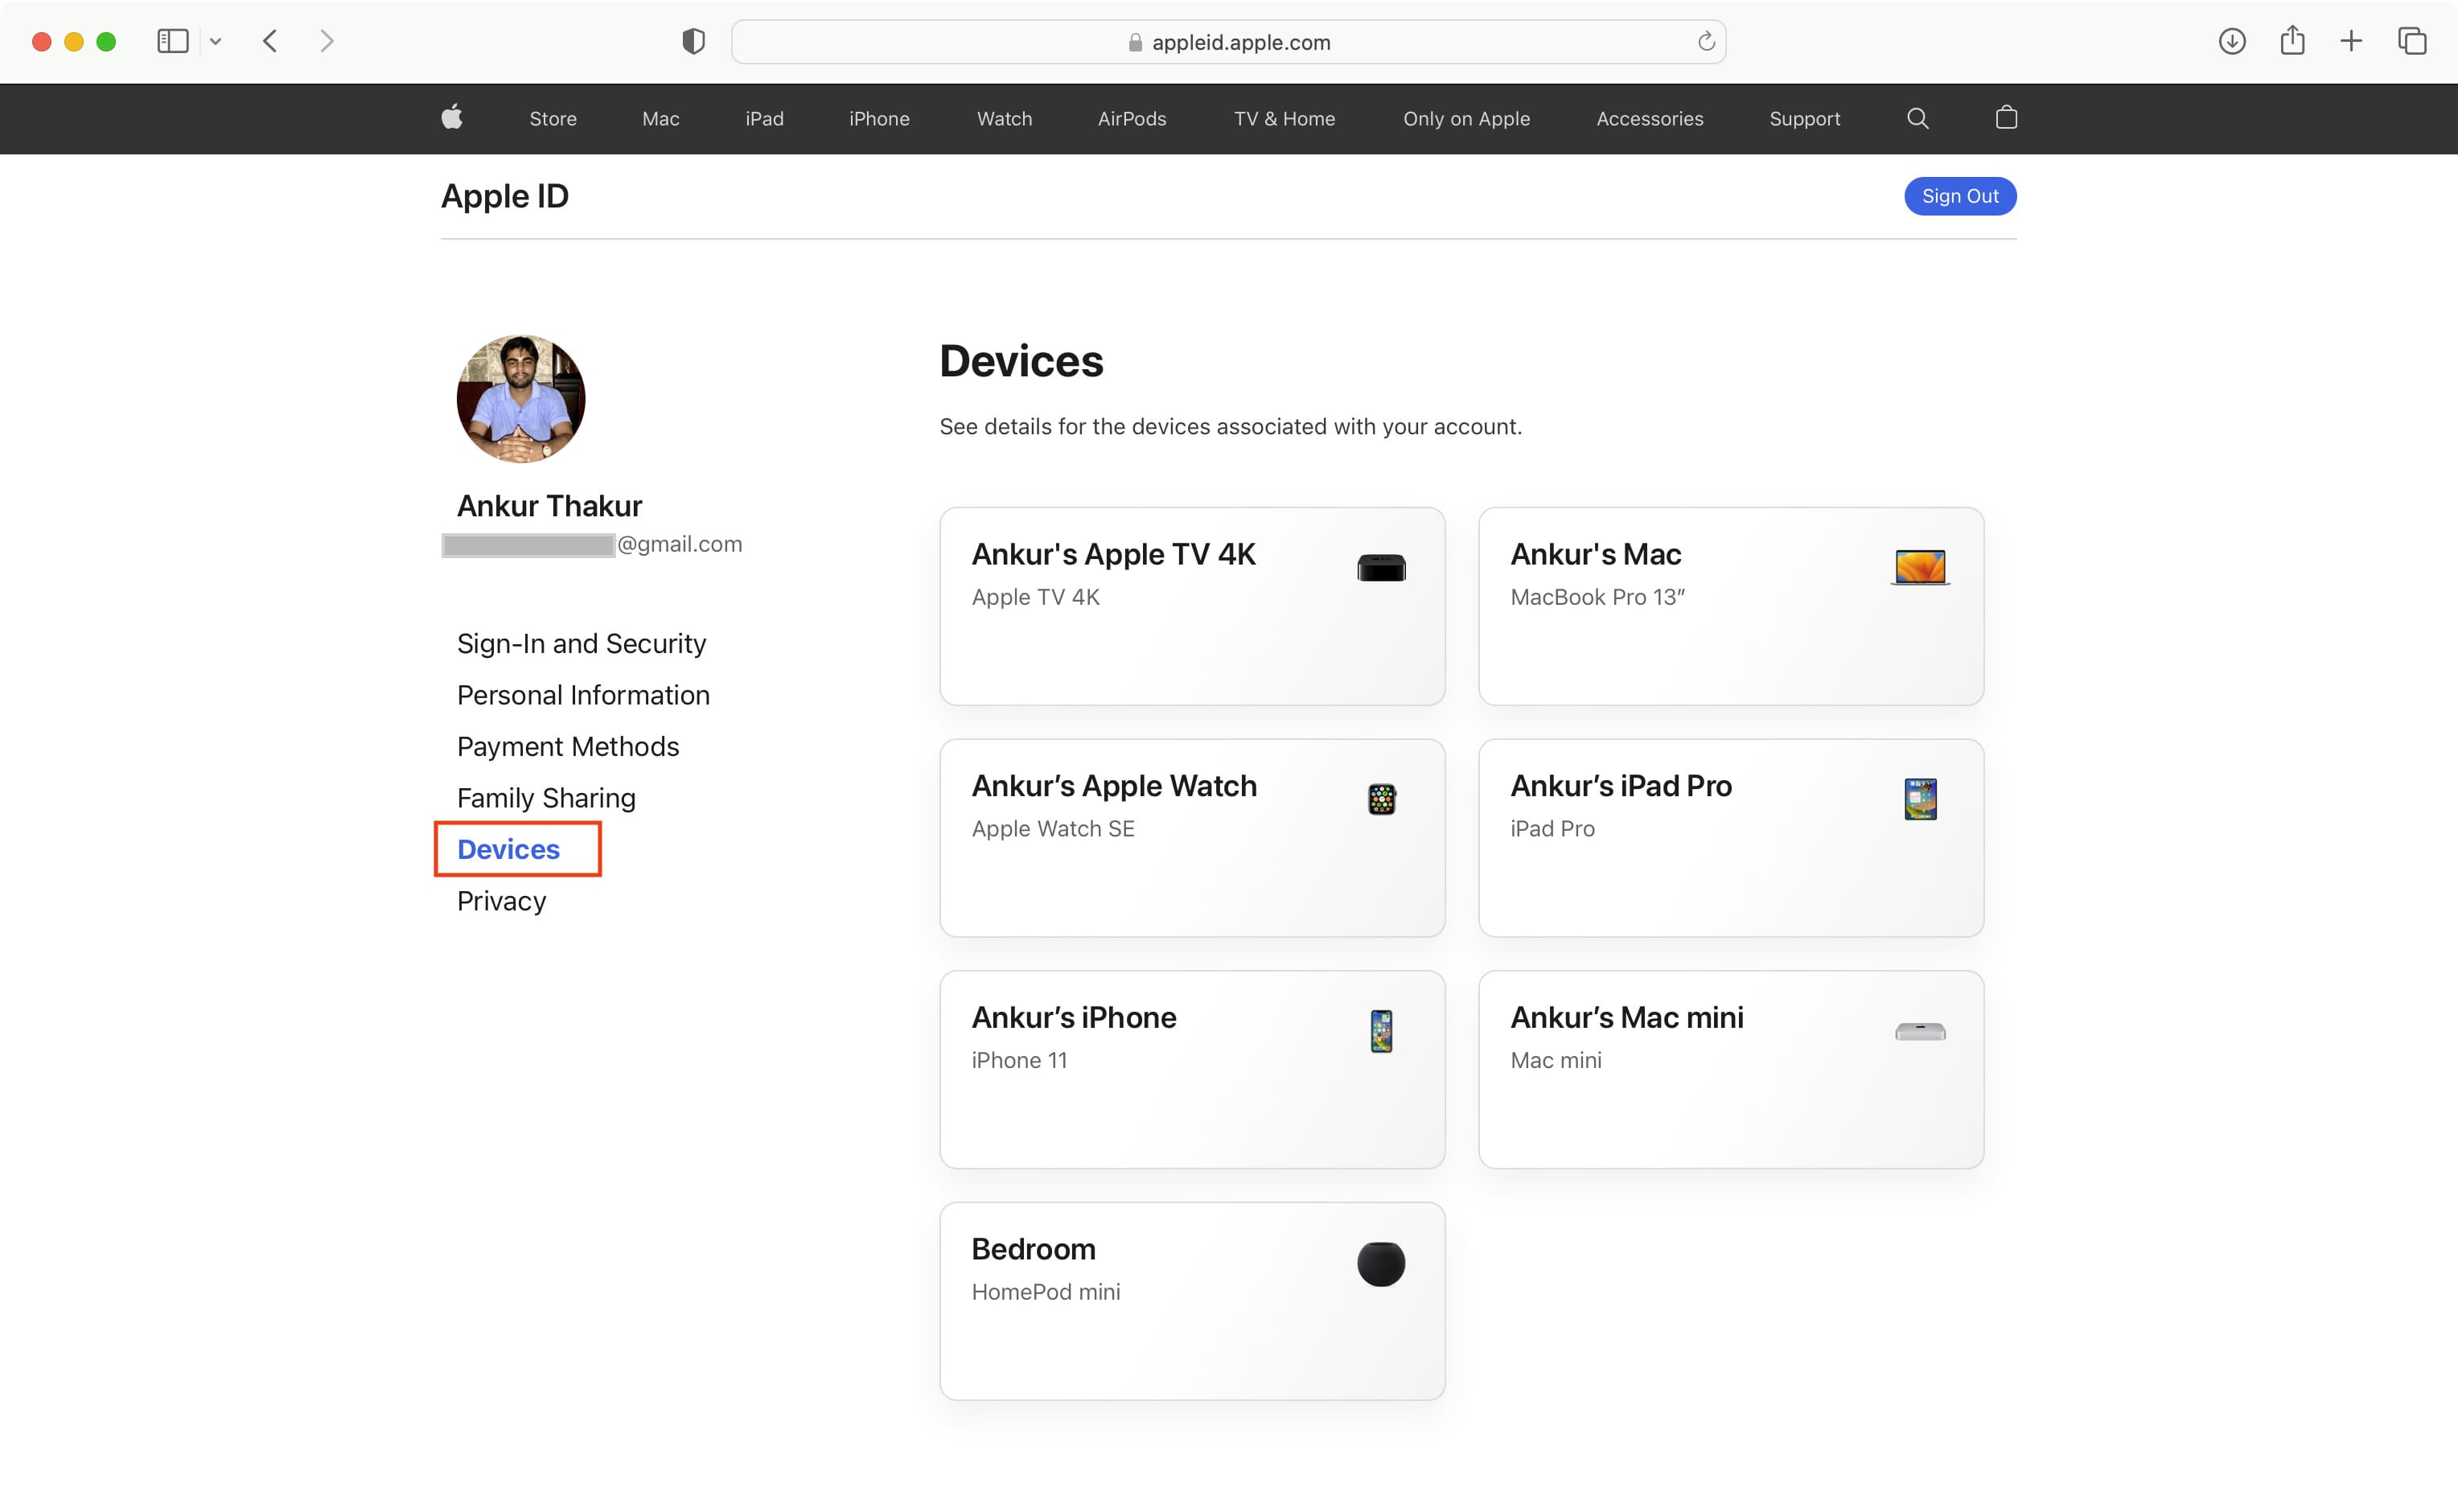 Tous vos appareils Apple sur le site Web Apple ID